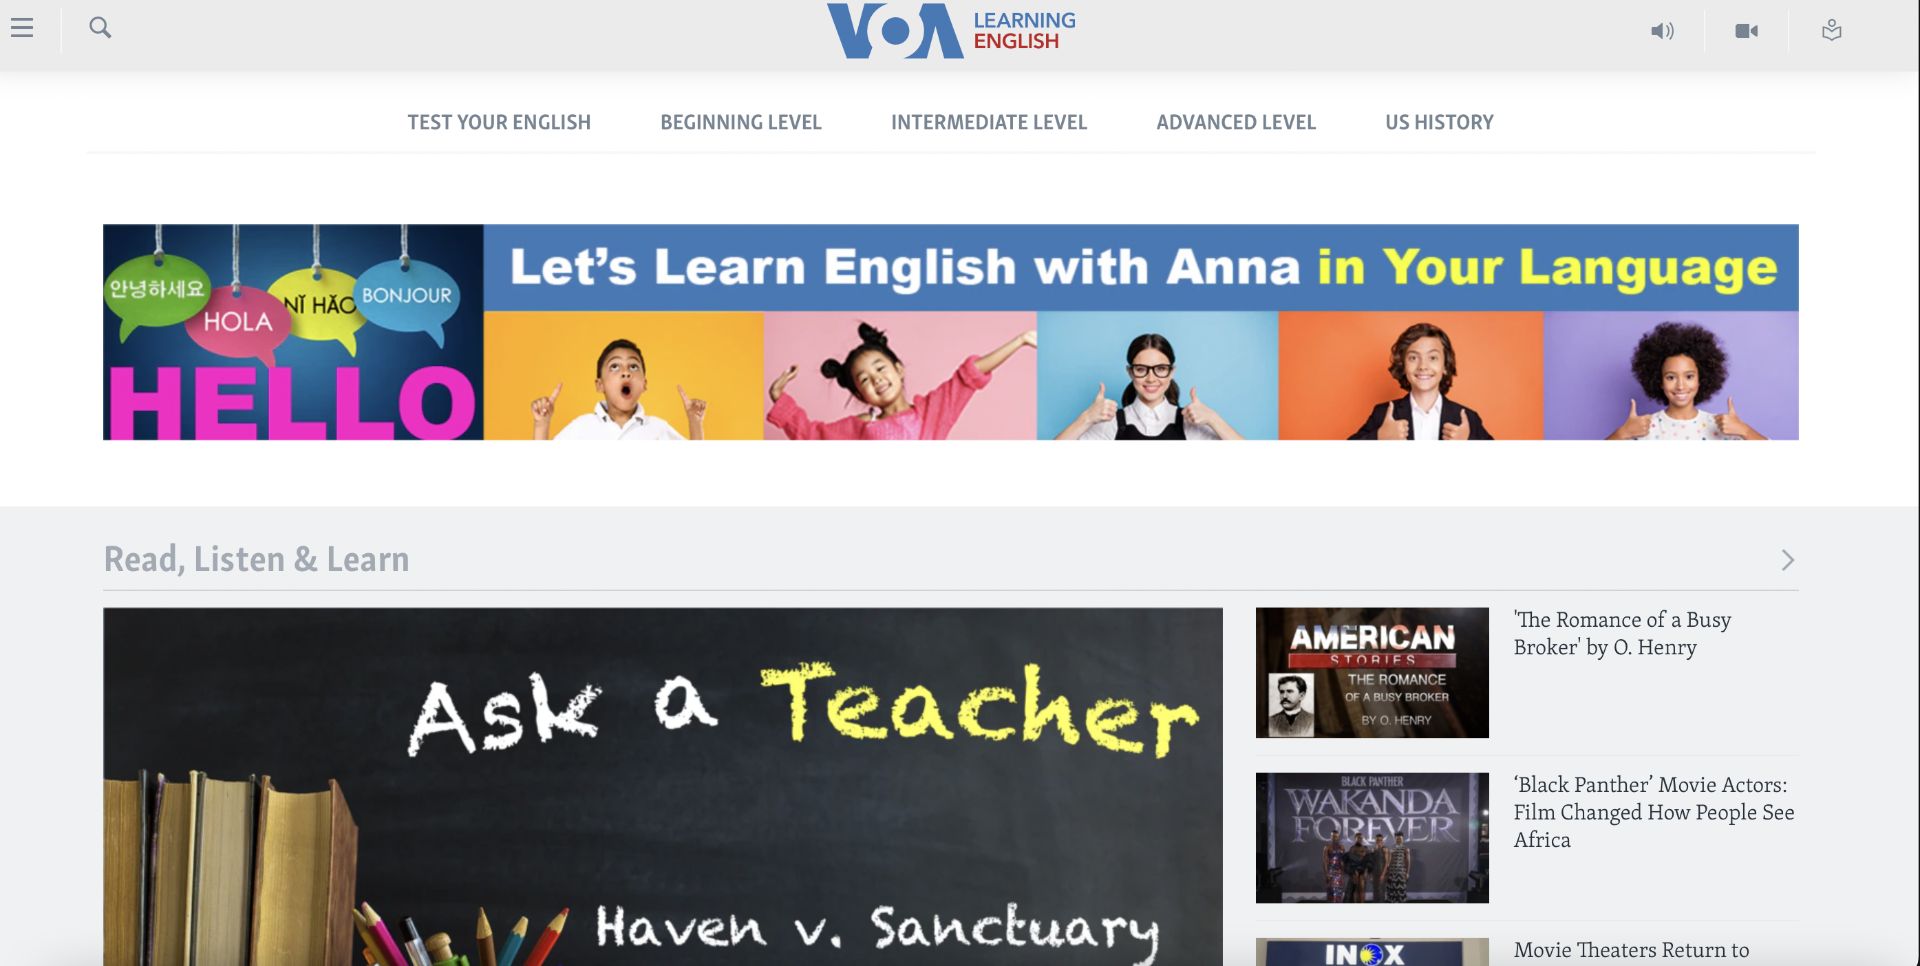 مرجع متخصصين ايران صفحه نخست وب‌سايت VOA Learning English